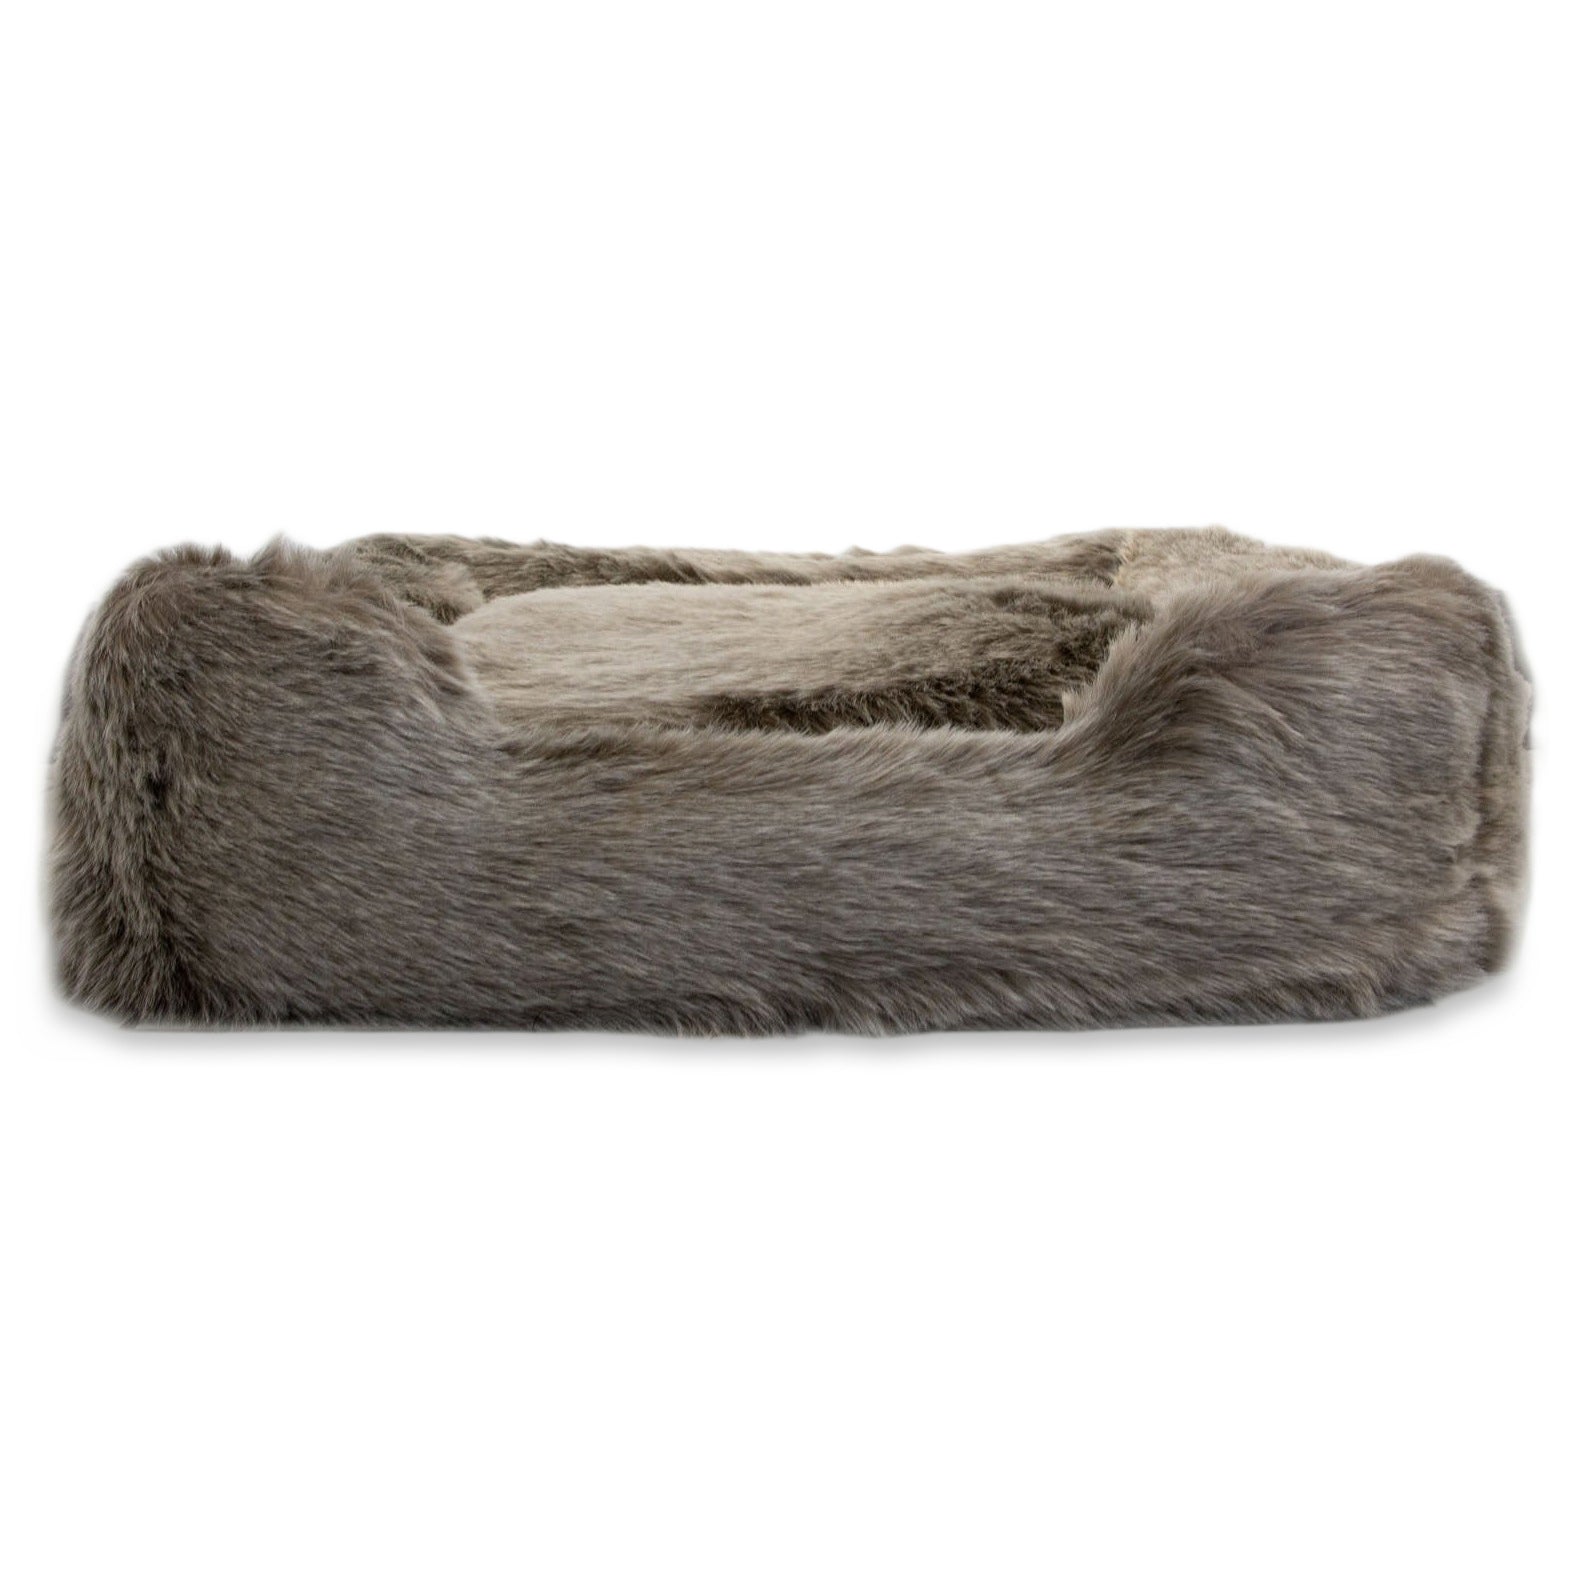 Maine square bed faux fur